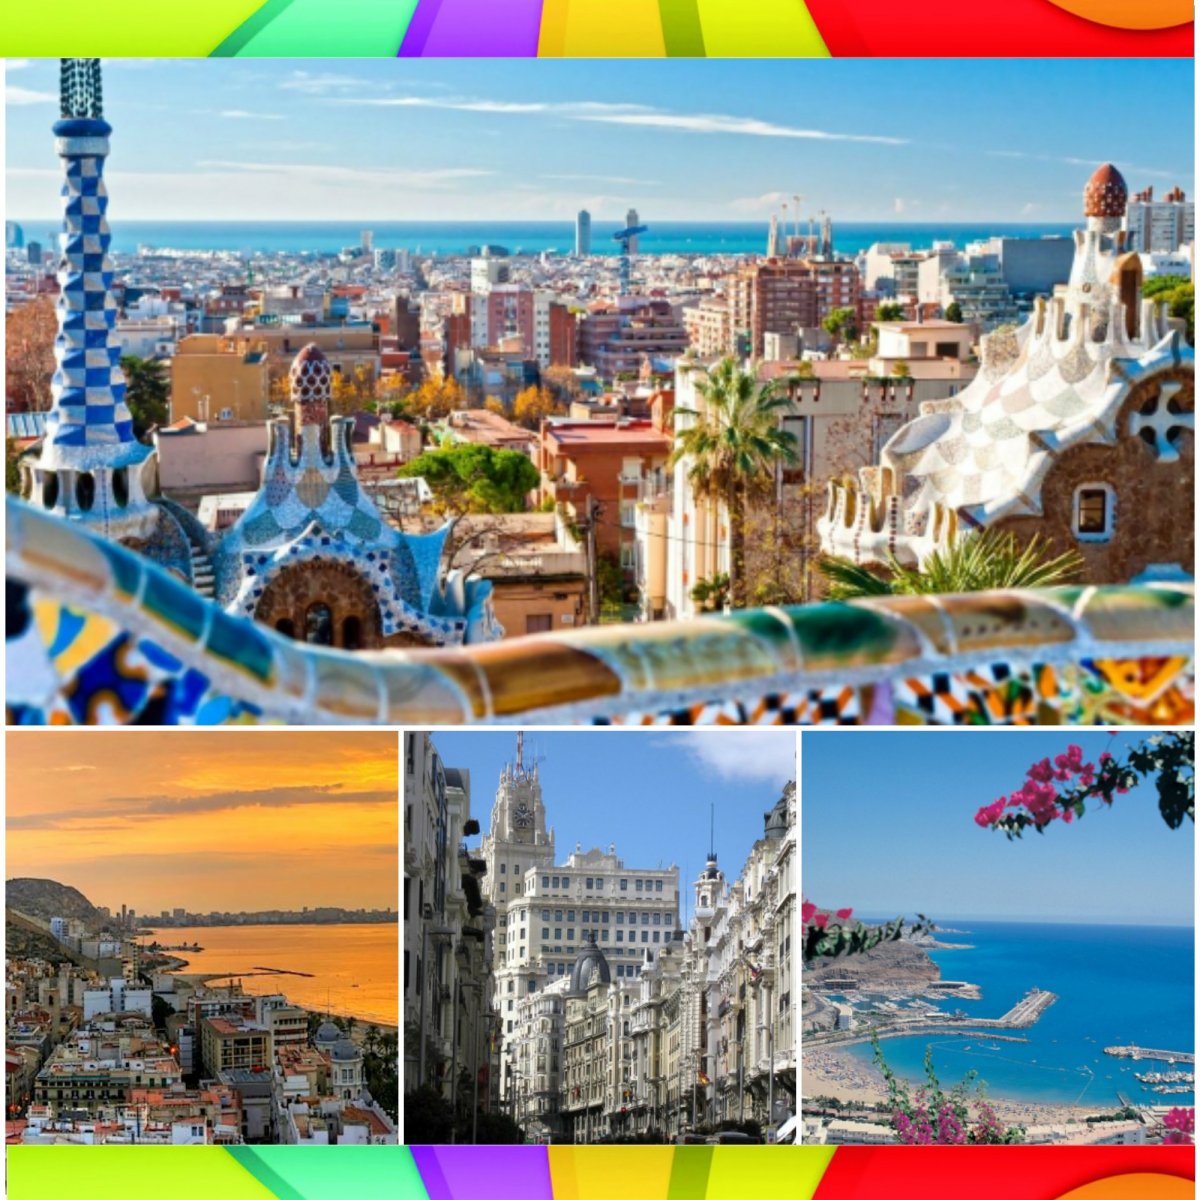 Открыт набор в молодежную культурно-развлекательную поездку с 06 августа по 13 августа по маршруту "Красочная Барселона: лето в стиле Гауди🦎"